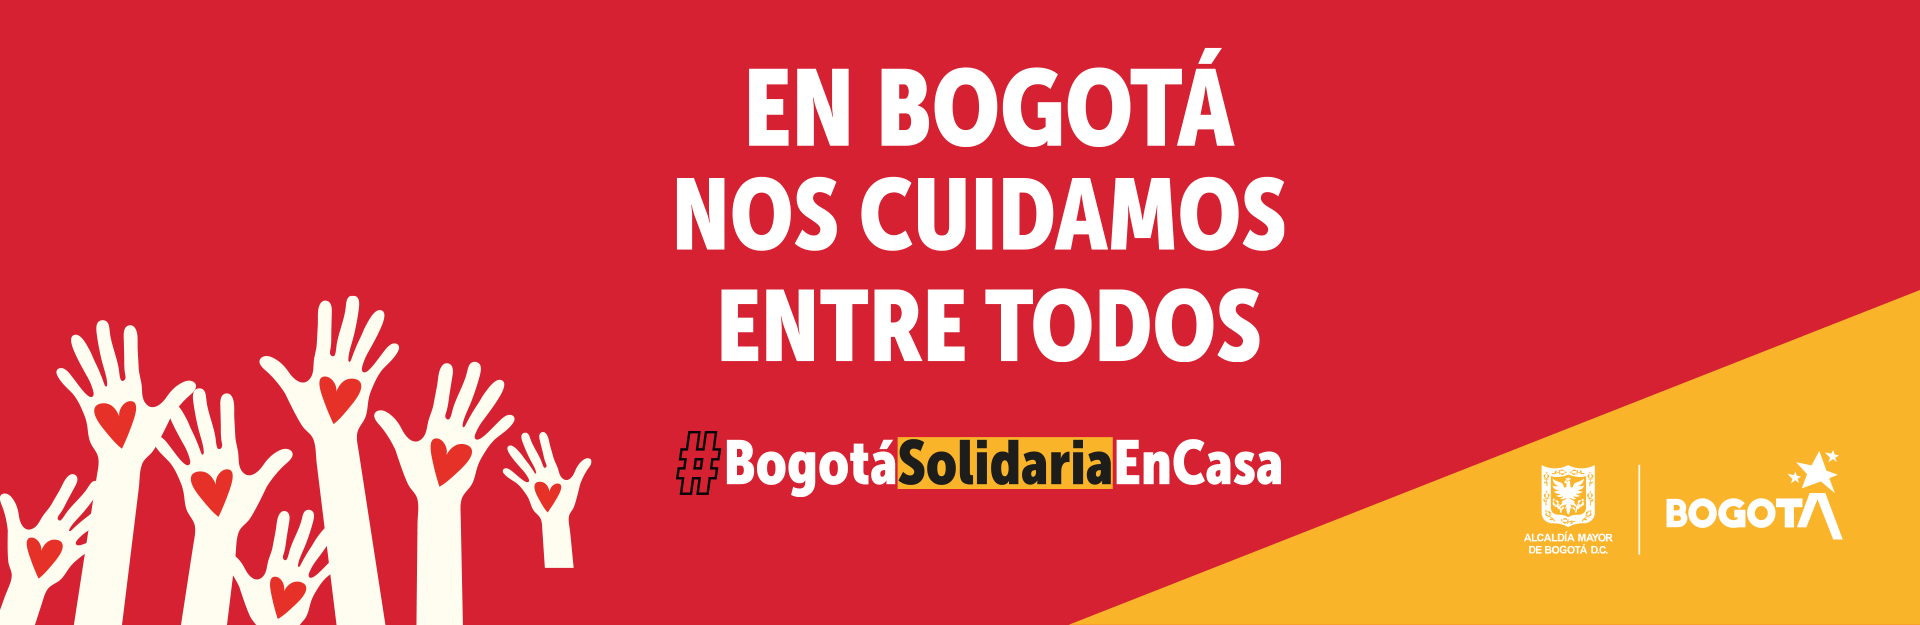 Bogotá solidaria en cuarentena